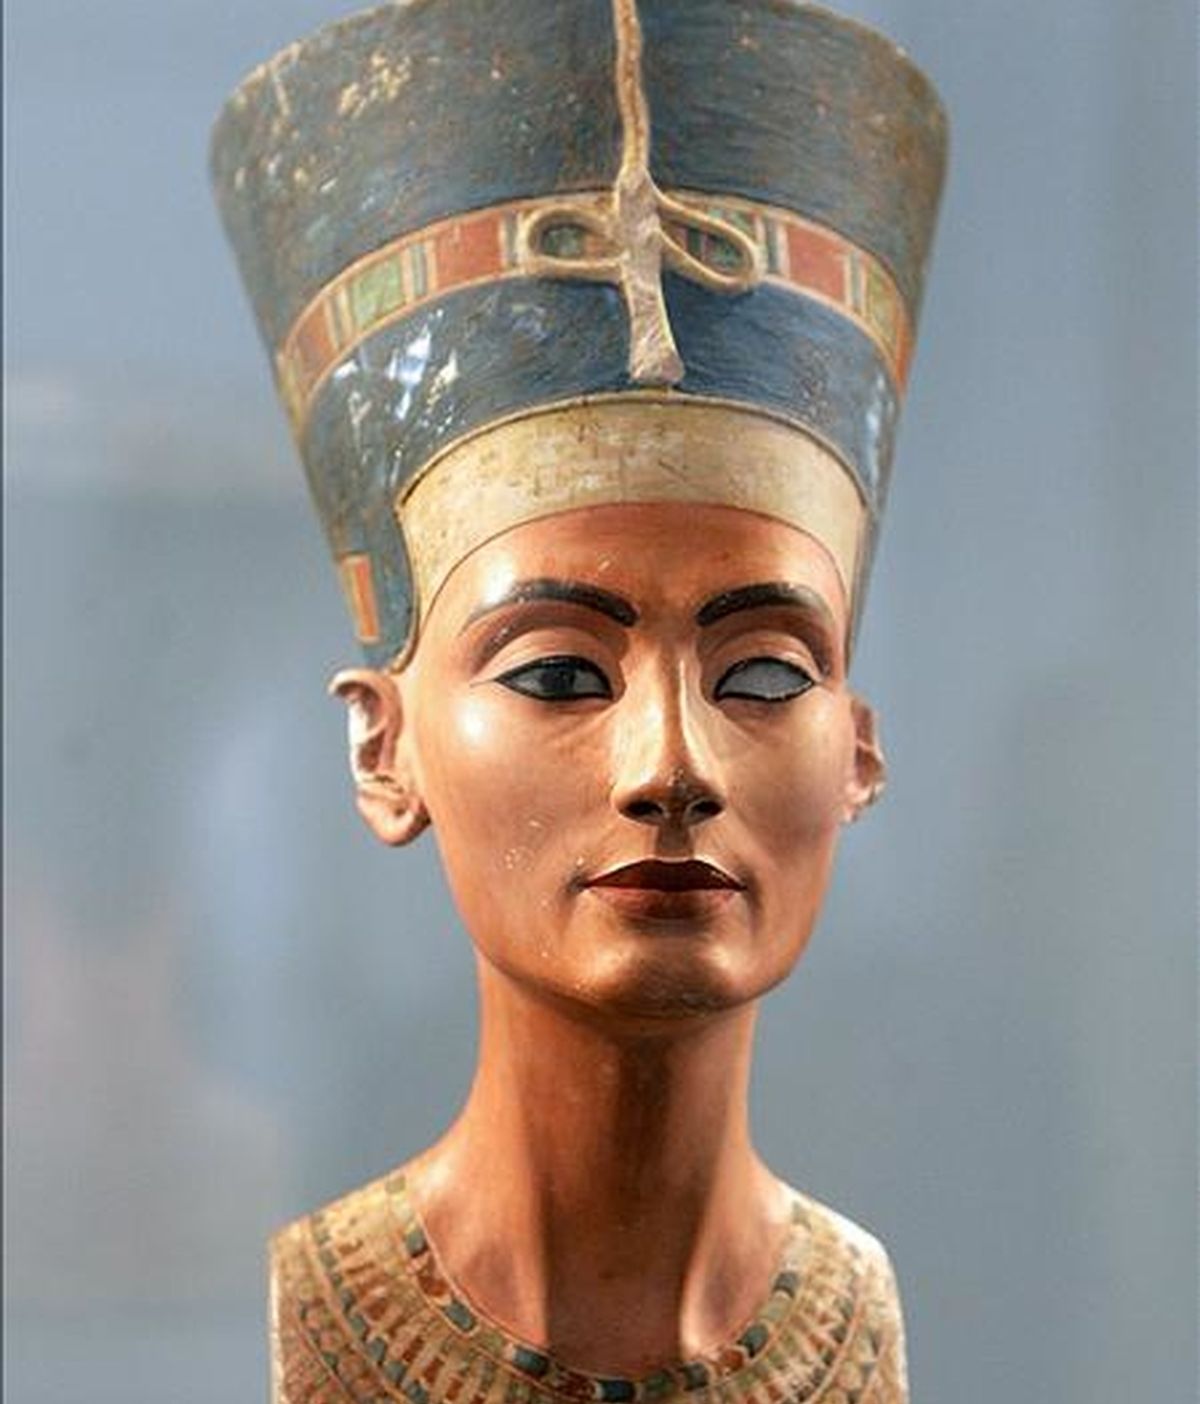 Las autoridades egipcias reclaman a Berlín la devolución del busto de Nefertiti, la reina del Nilo de 3.400 años de edad a la que arqueólogos alemanes hallaron en el Valle de Amarna en 1912 y sacaron del país ilegalmente, según Egipto. EFE/Archivo